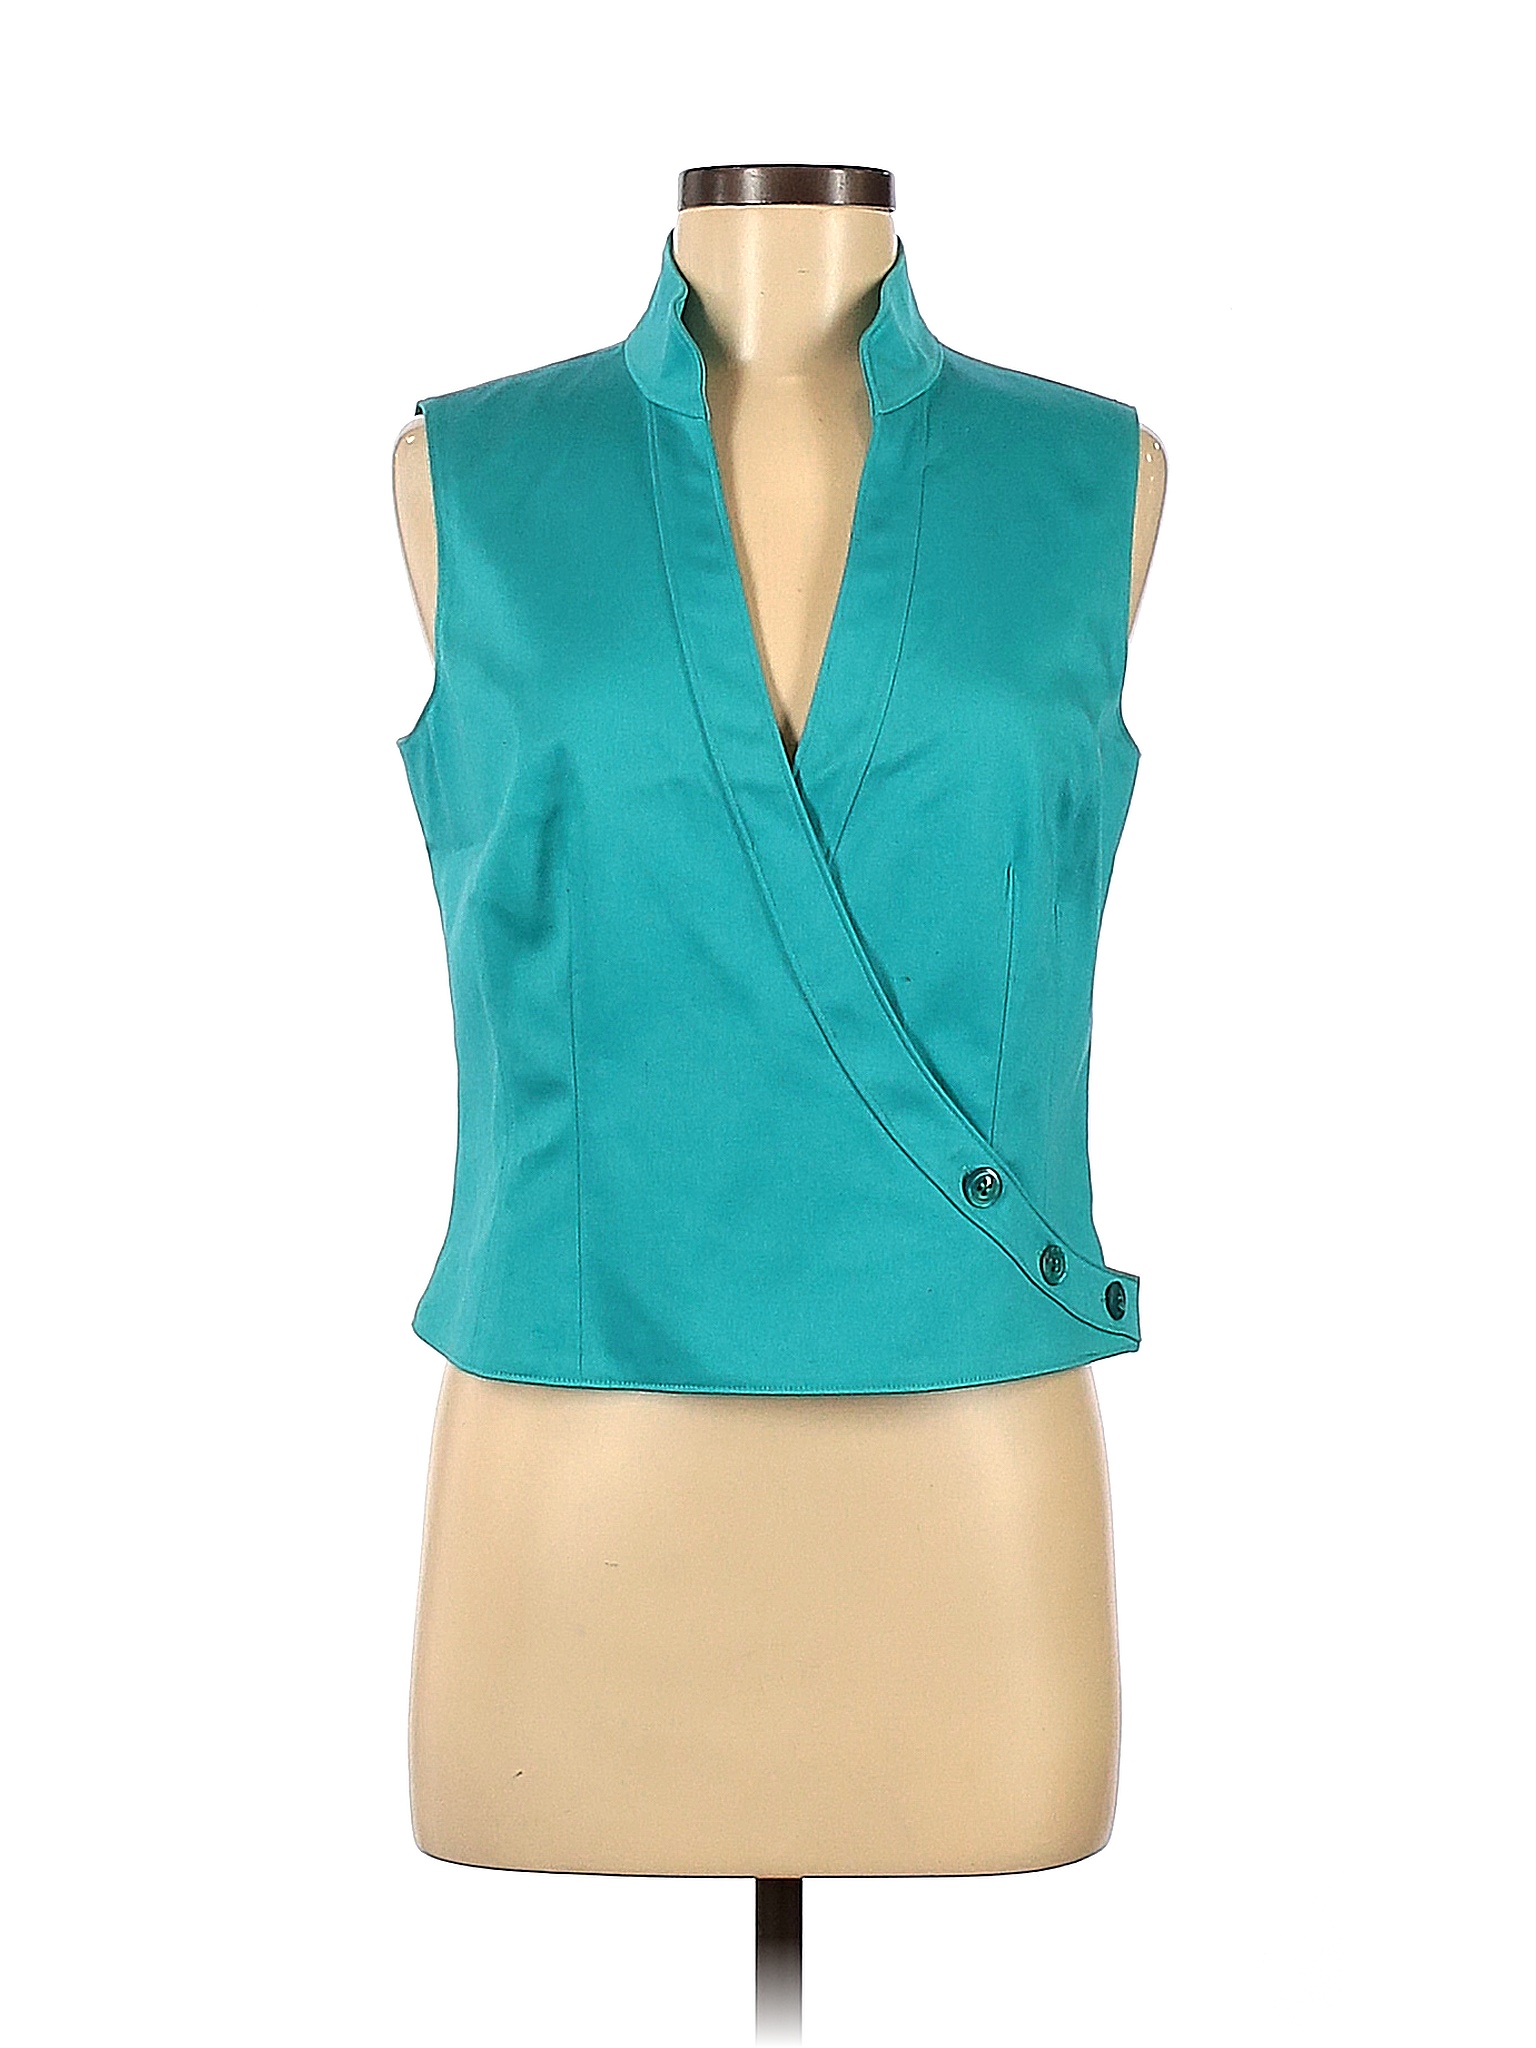 Carlisle Solid Blue Vest Size 8 - 88% off | thredUP